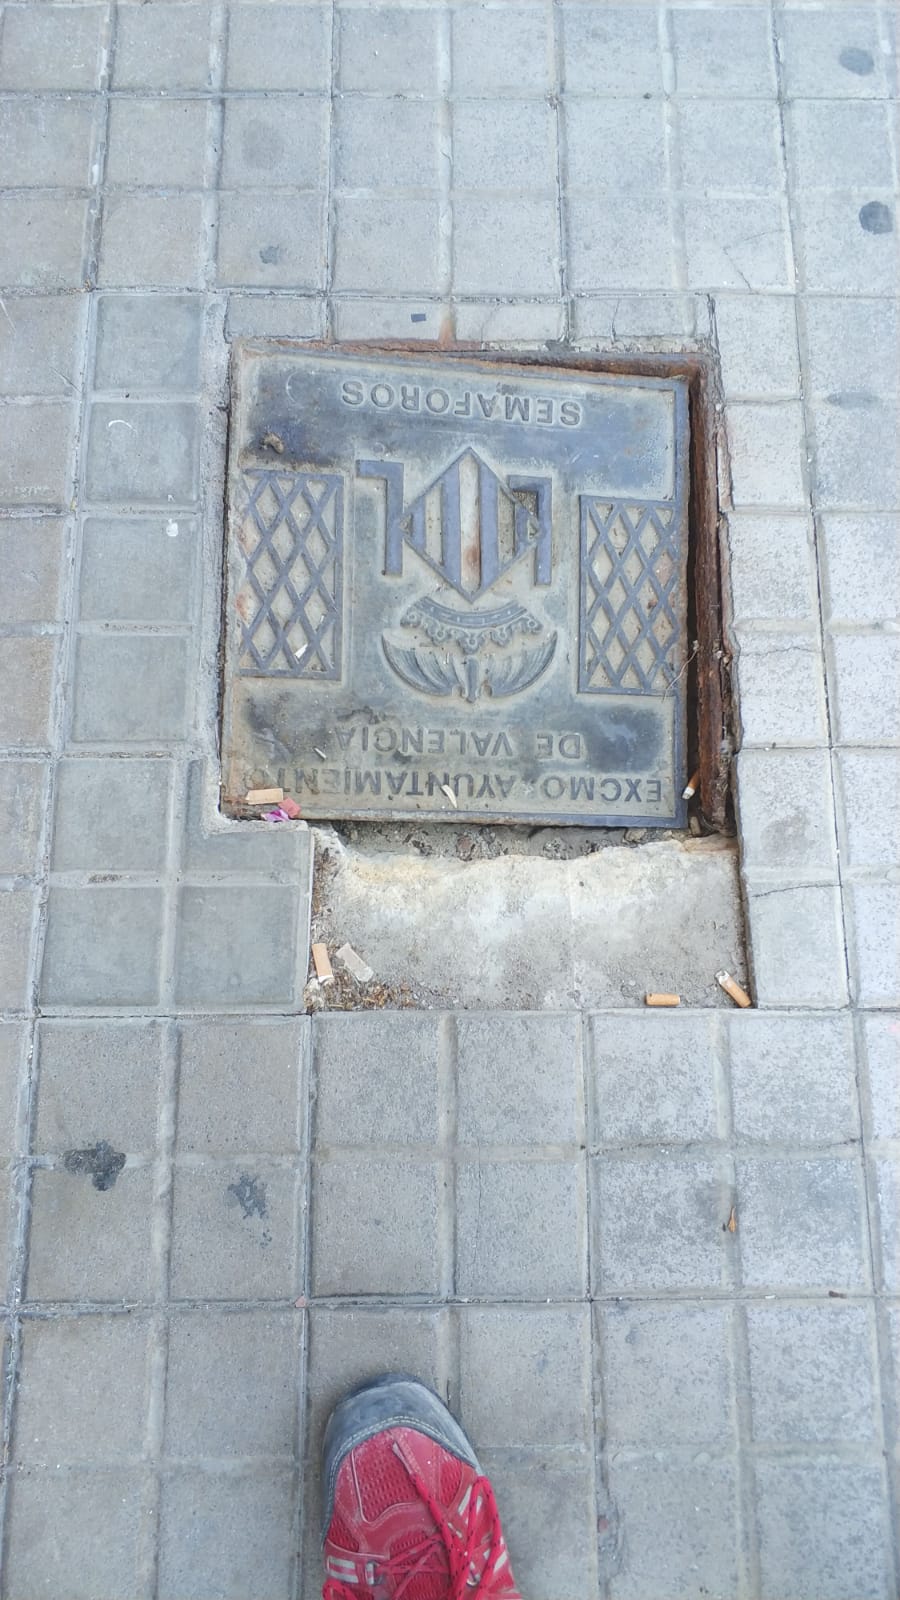 Hepe Fachadas: últimos trabajos en reforma y saneamiento de fachadas en Valencia